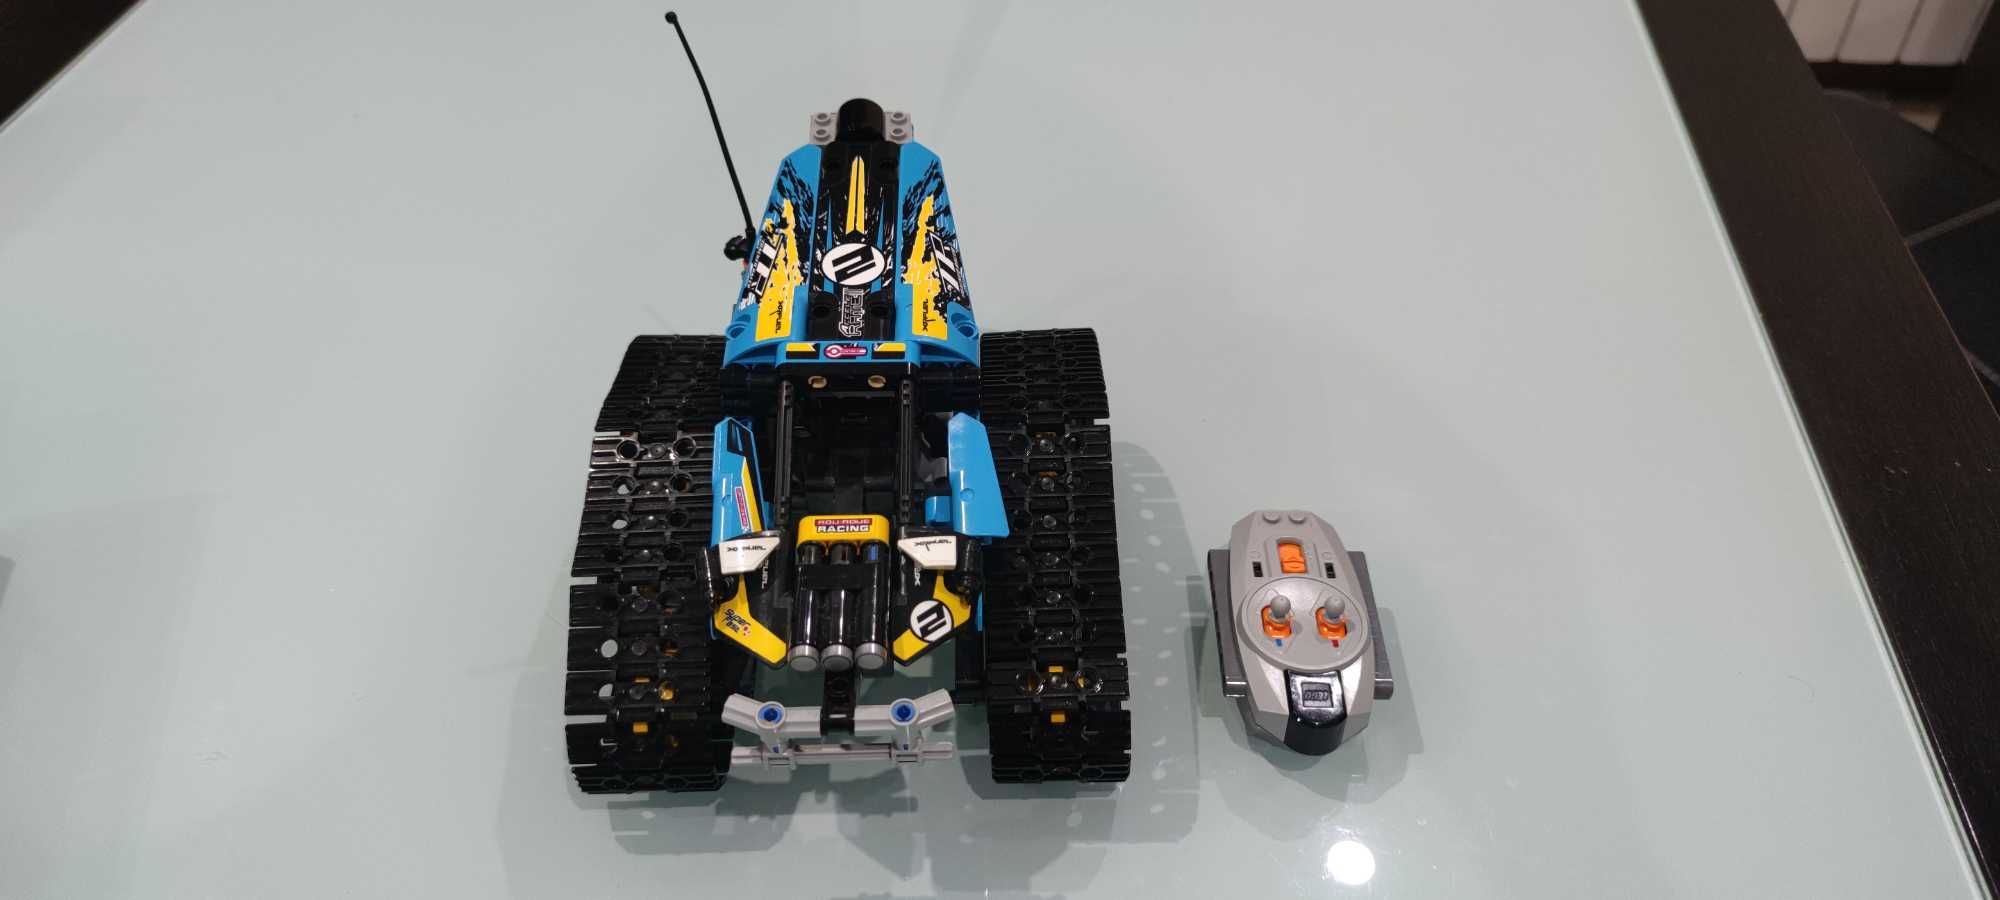 Carro Lego telecomandado com caixa e manual